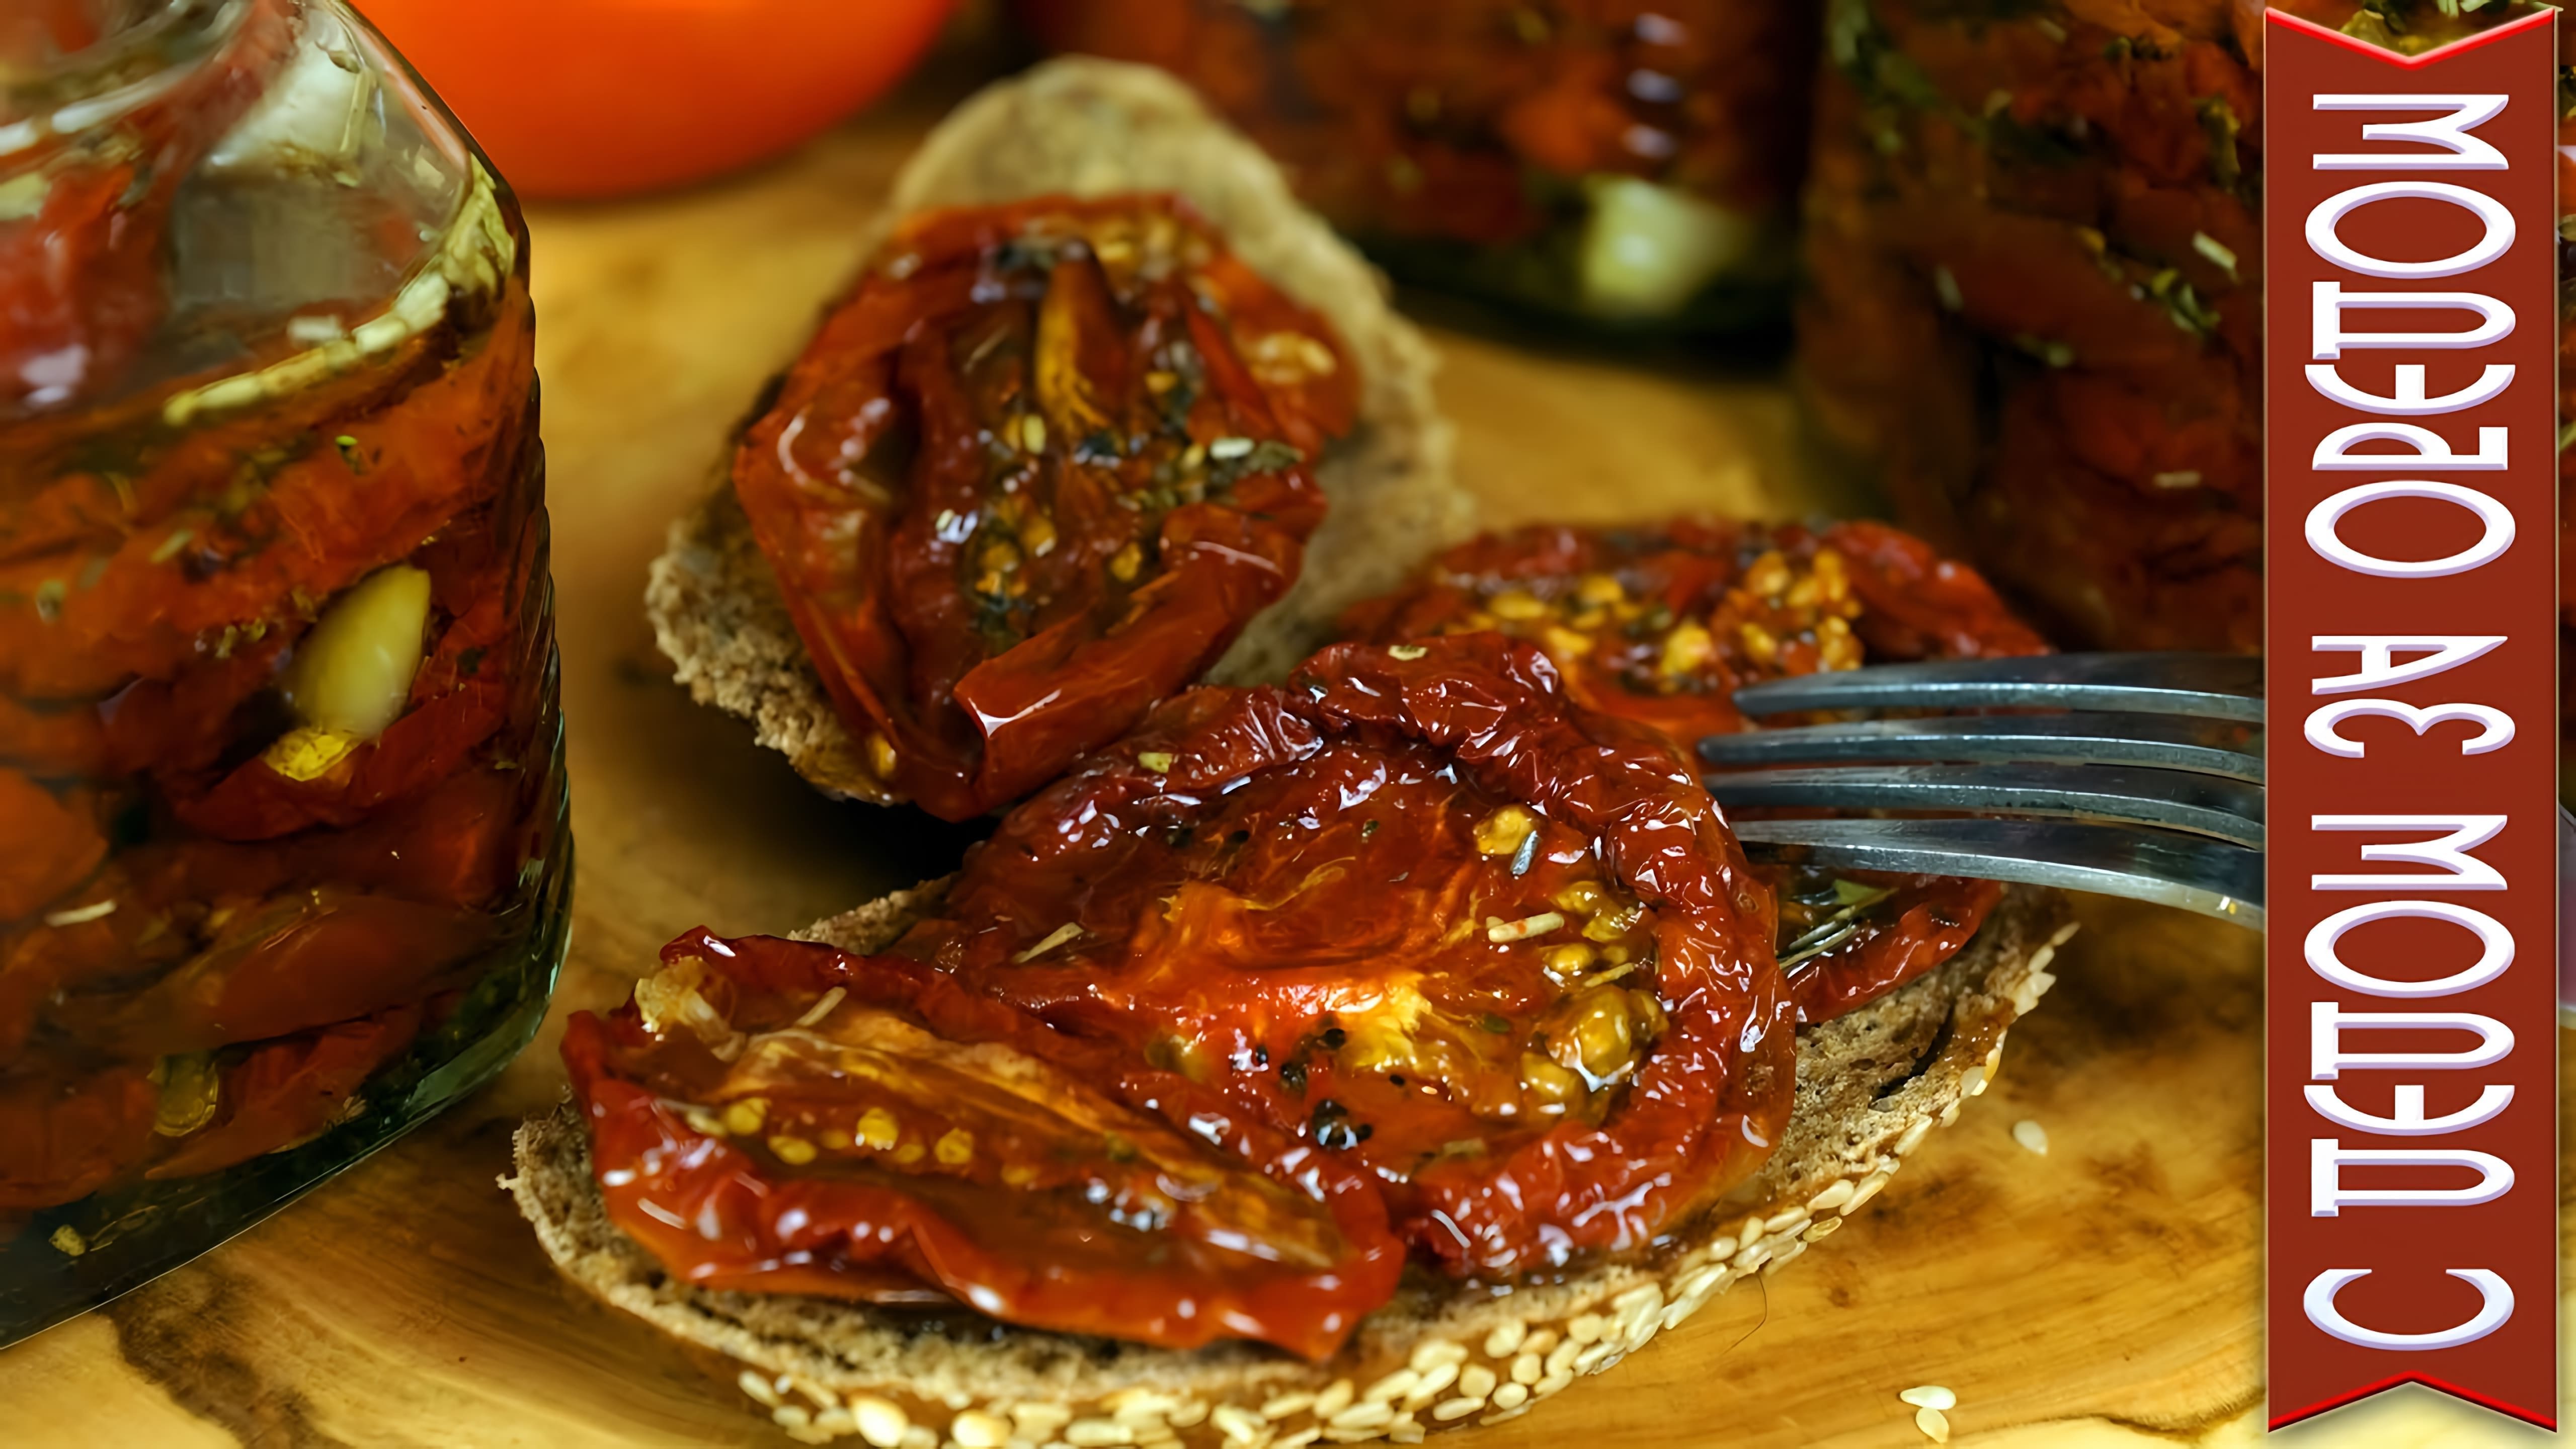 В этом видео демонстрируется рецепт приготовления вяленых помидоров в масле по итальянскому рецепту